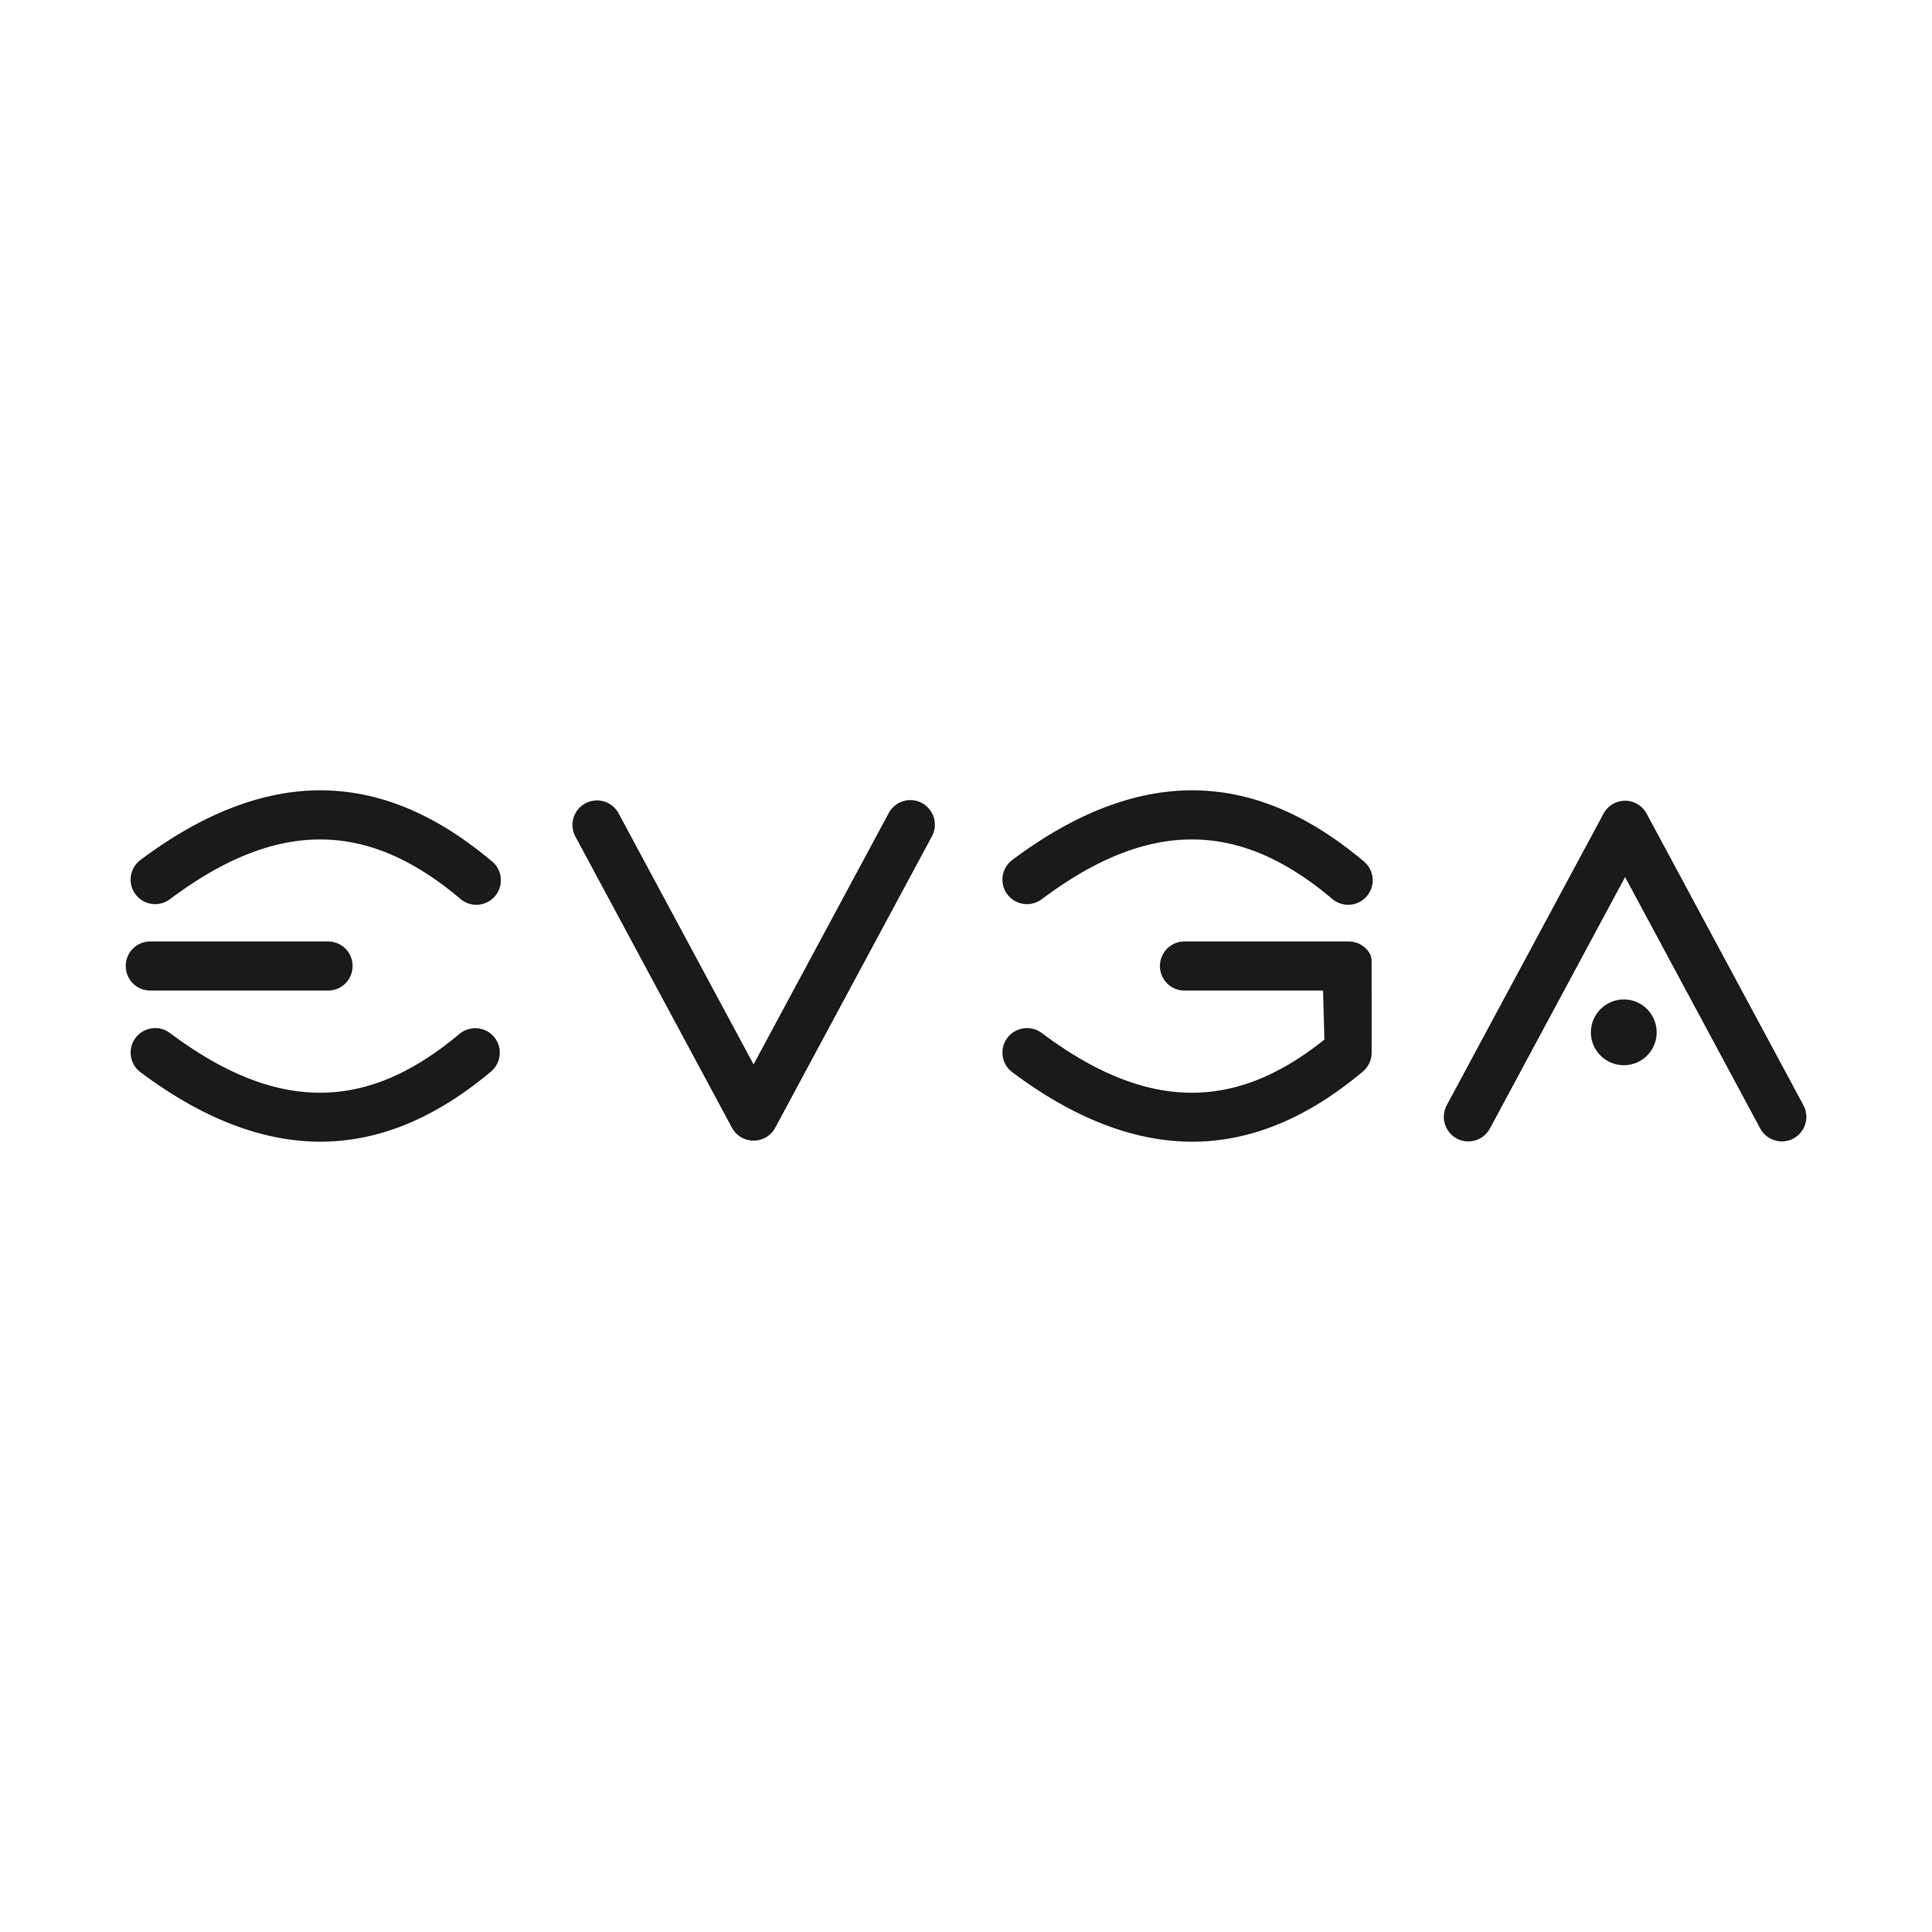 EVGA Logo PNG.